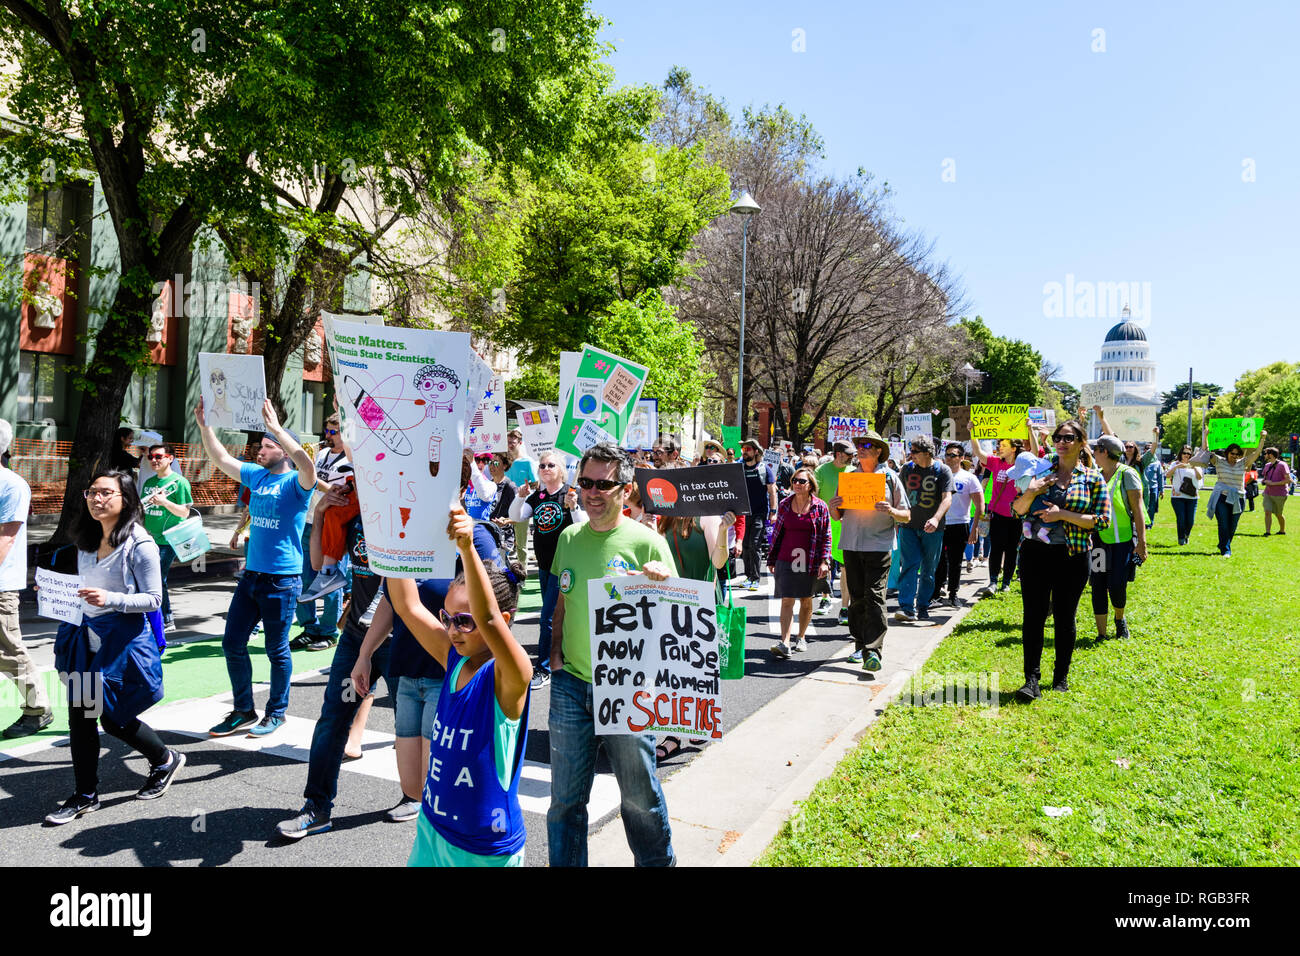 14 avril, 2018 Sacramento / CA / USA - Les participants à la marche de la science et de l'impôt sur le marche Mars Capitol Mall ; California State Capitol buil Banque D'Images